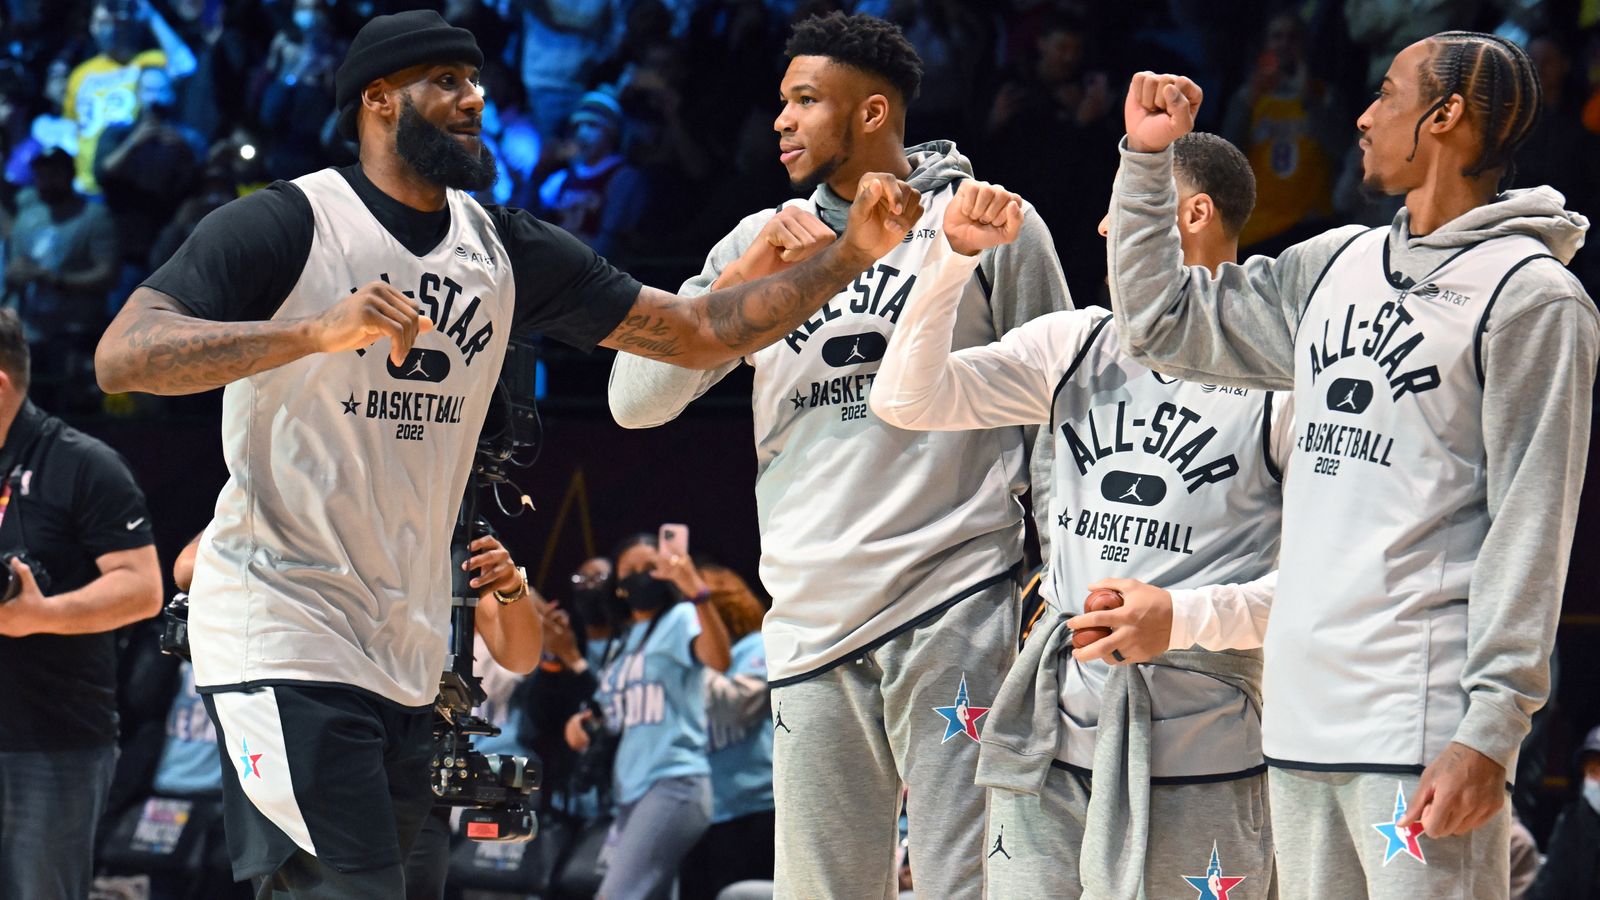 NBA All-Star Game: Team LeBron defeats Team Durant